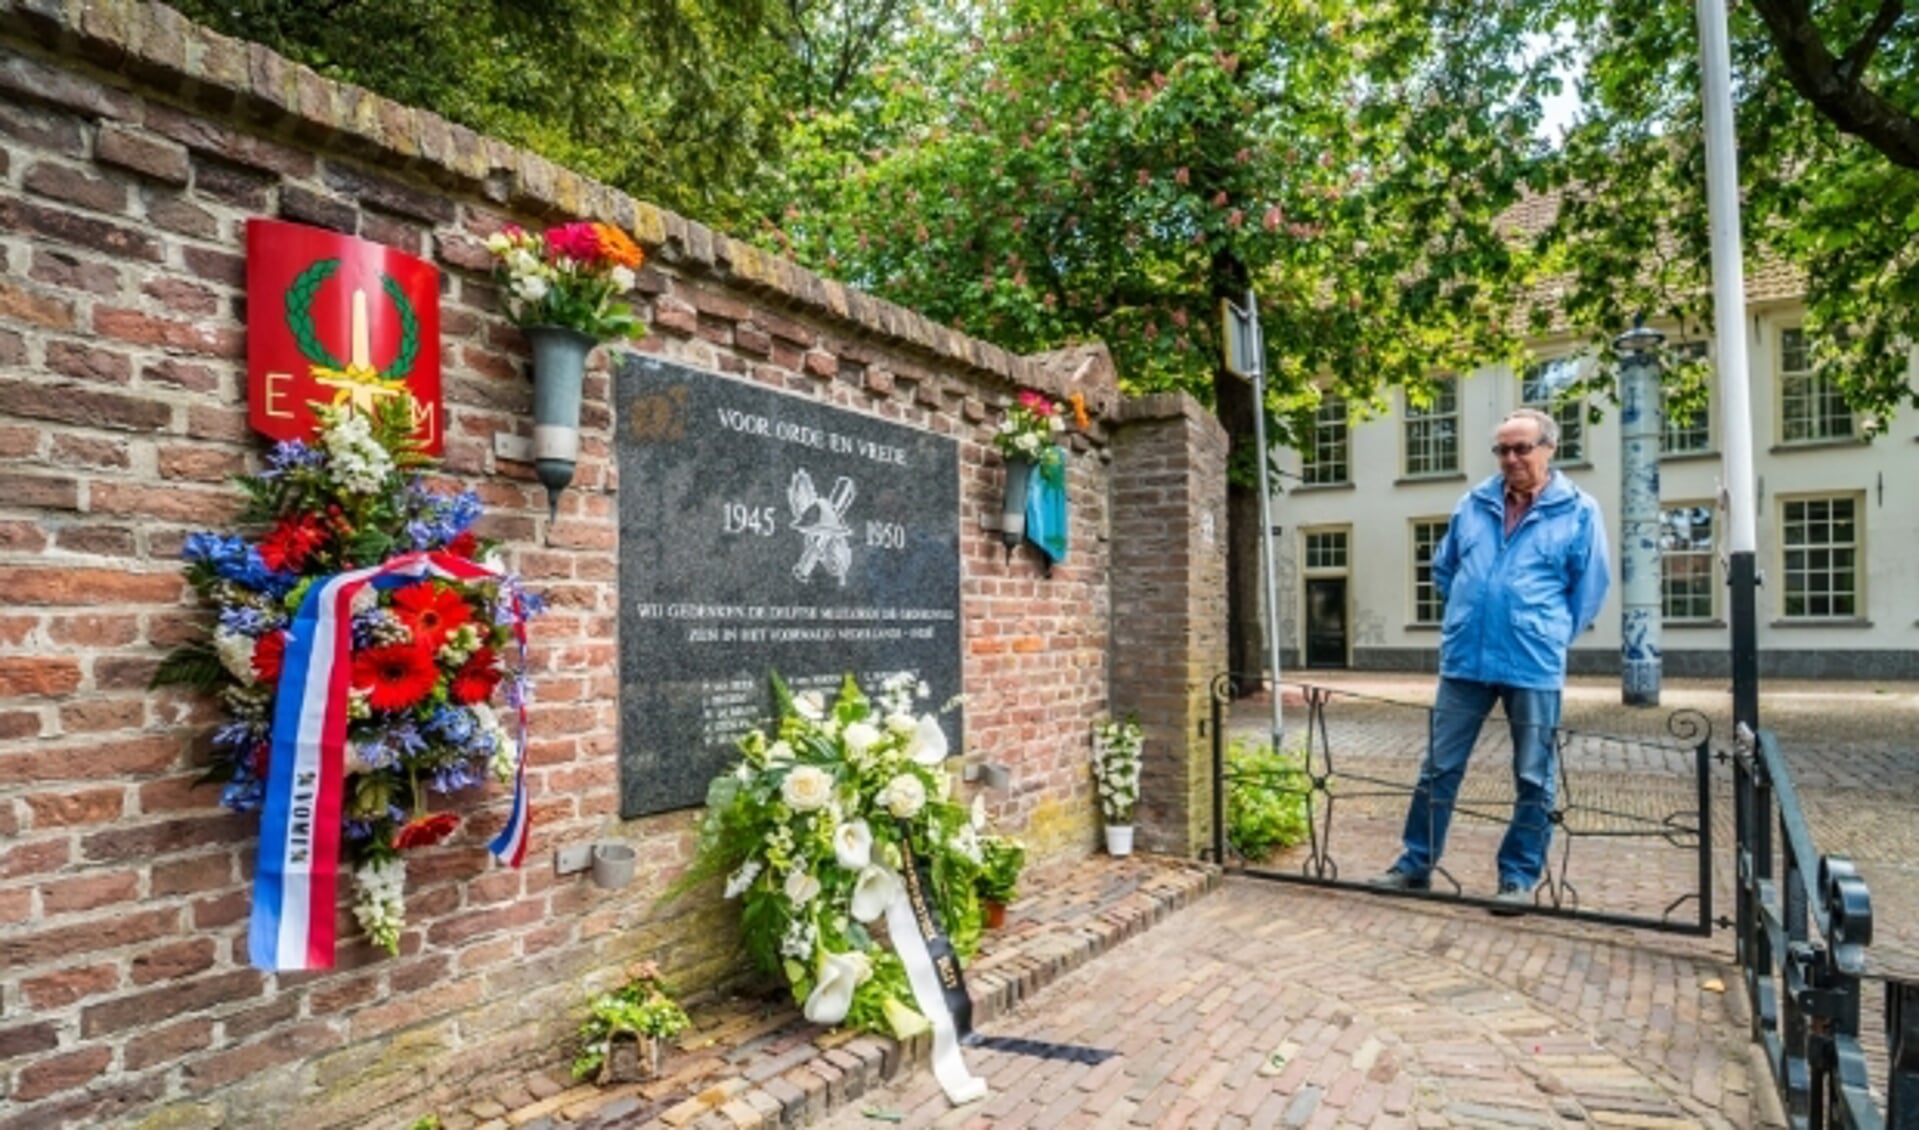 Overal in het land wordt nog altijd (terecht) stilgestaan bij het werk van de vele Nederlandse veteranen uit oorlogs- en vredestijd. 'De slag om de Schelde' is er een mooi voorbeeld van.